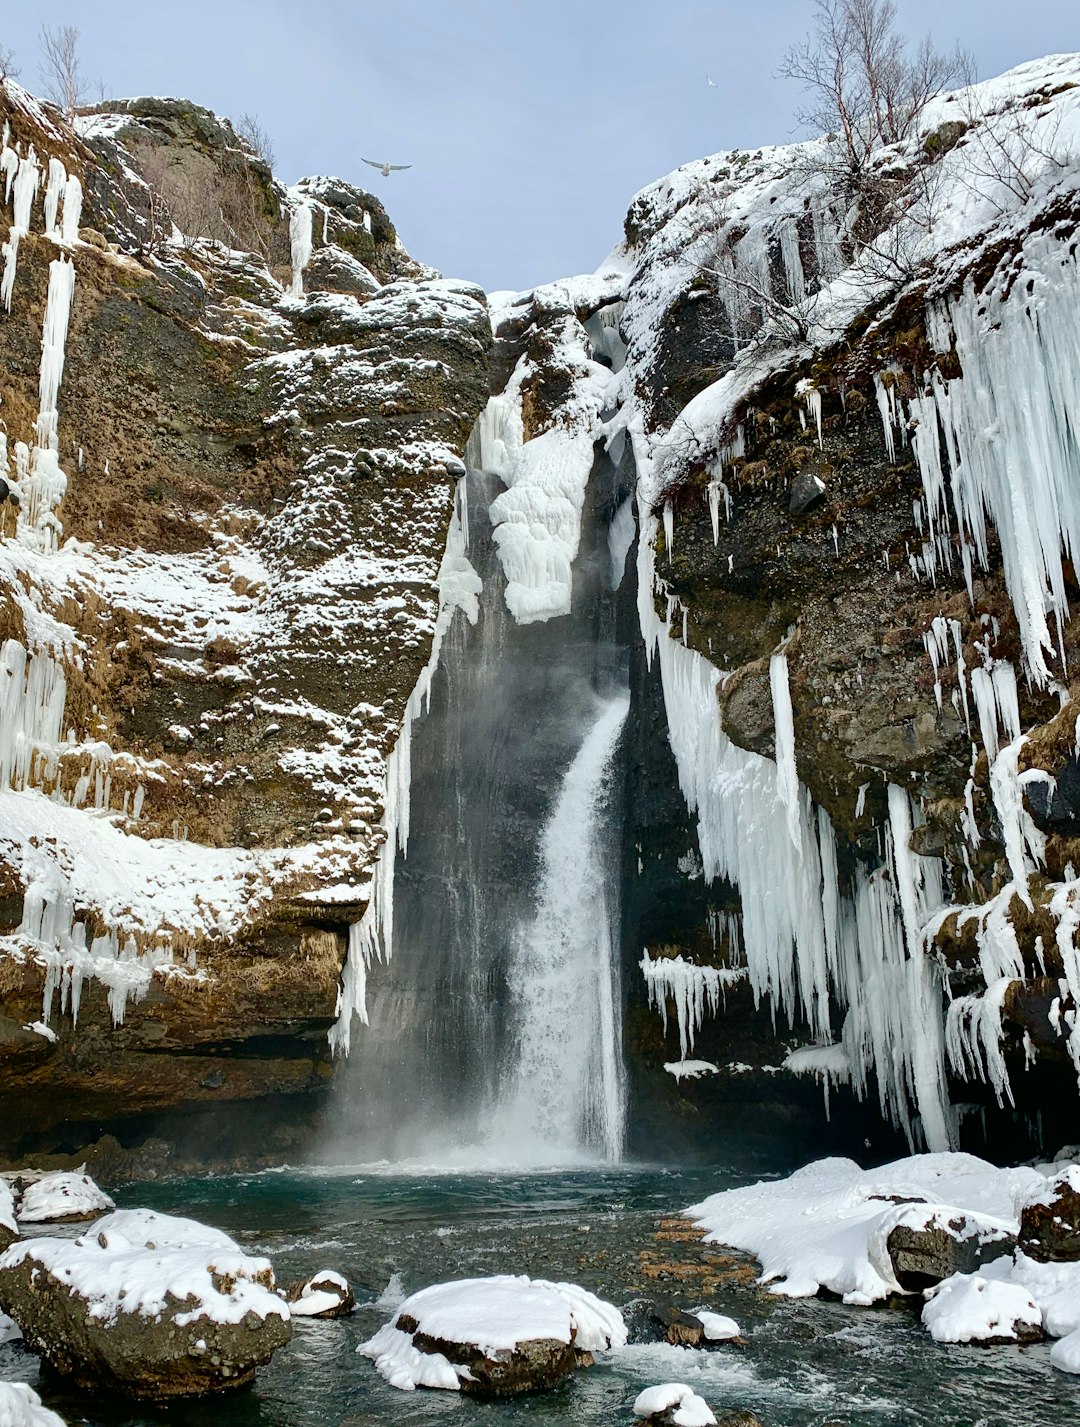 Waterfall photo spot Gluggafossavegur Gljúfrabúi